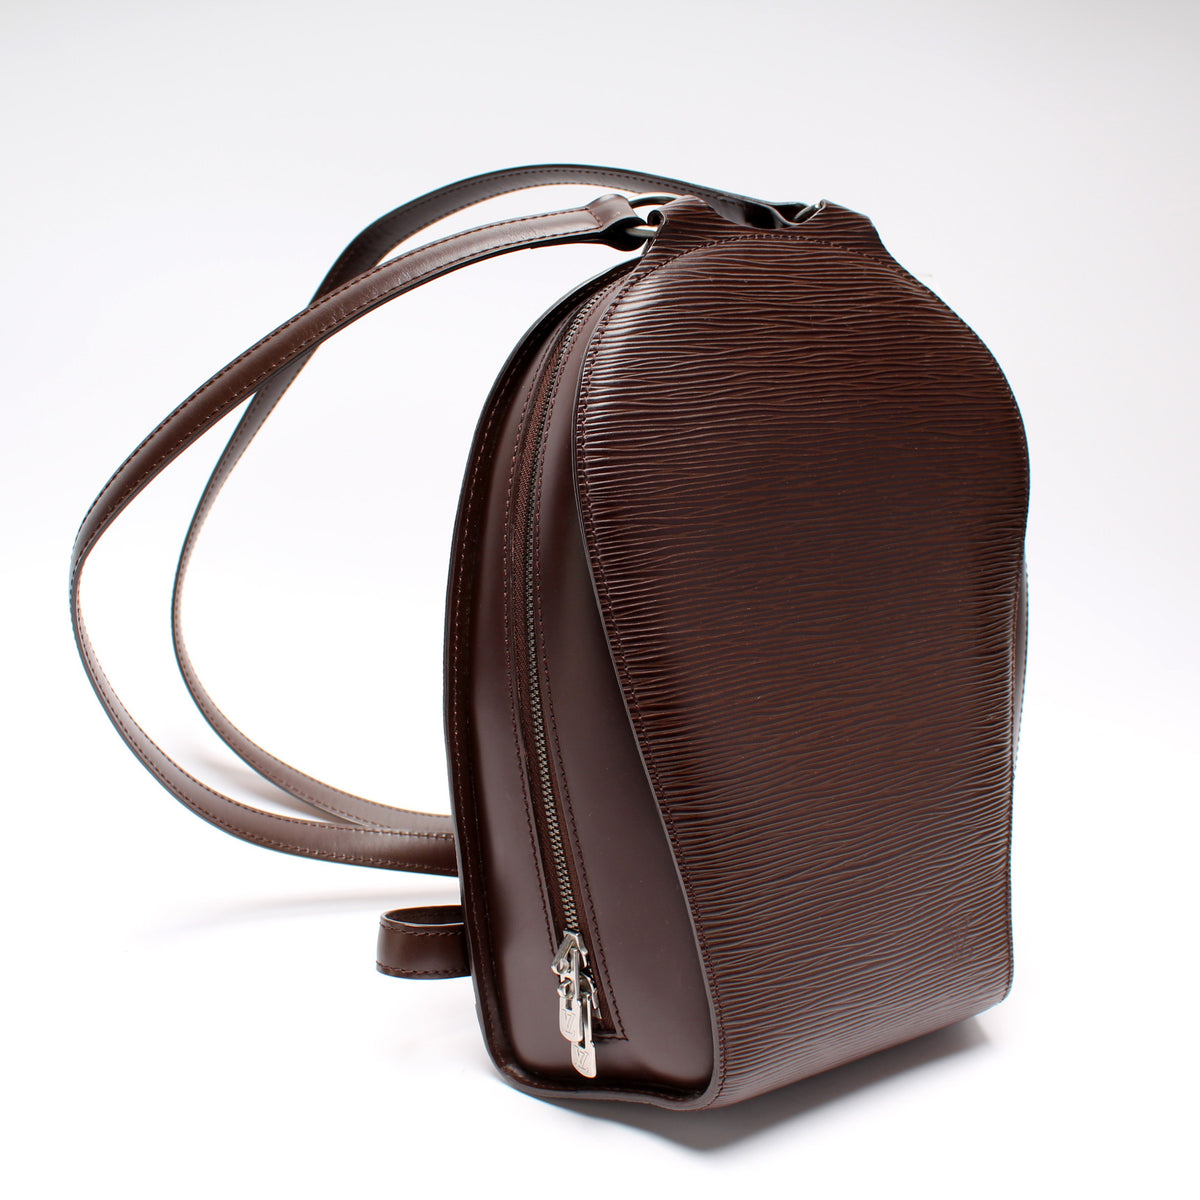 Louis Vuitton Black Epi Leather Mabillon Backpack Louis Vuitton